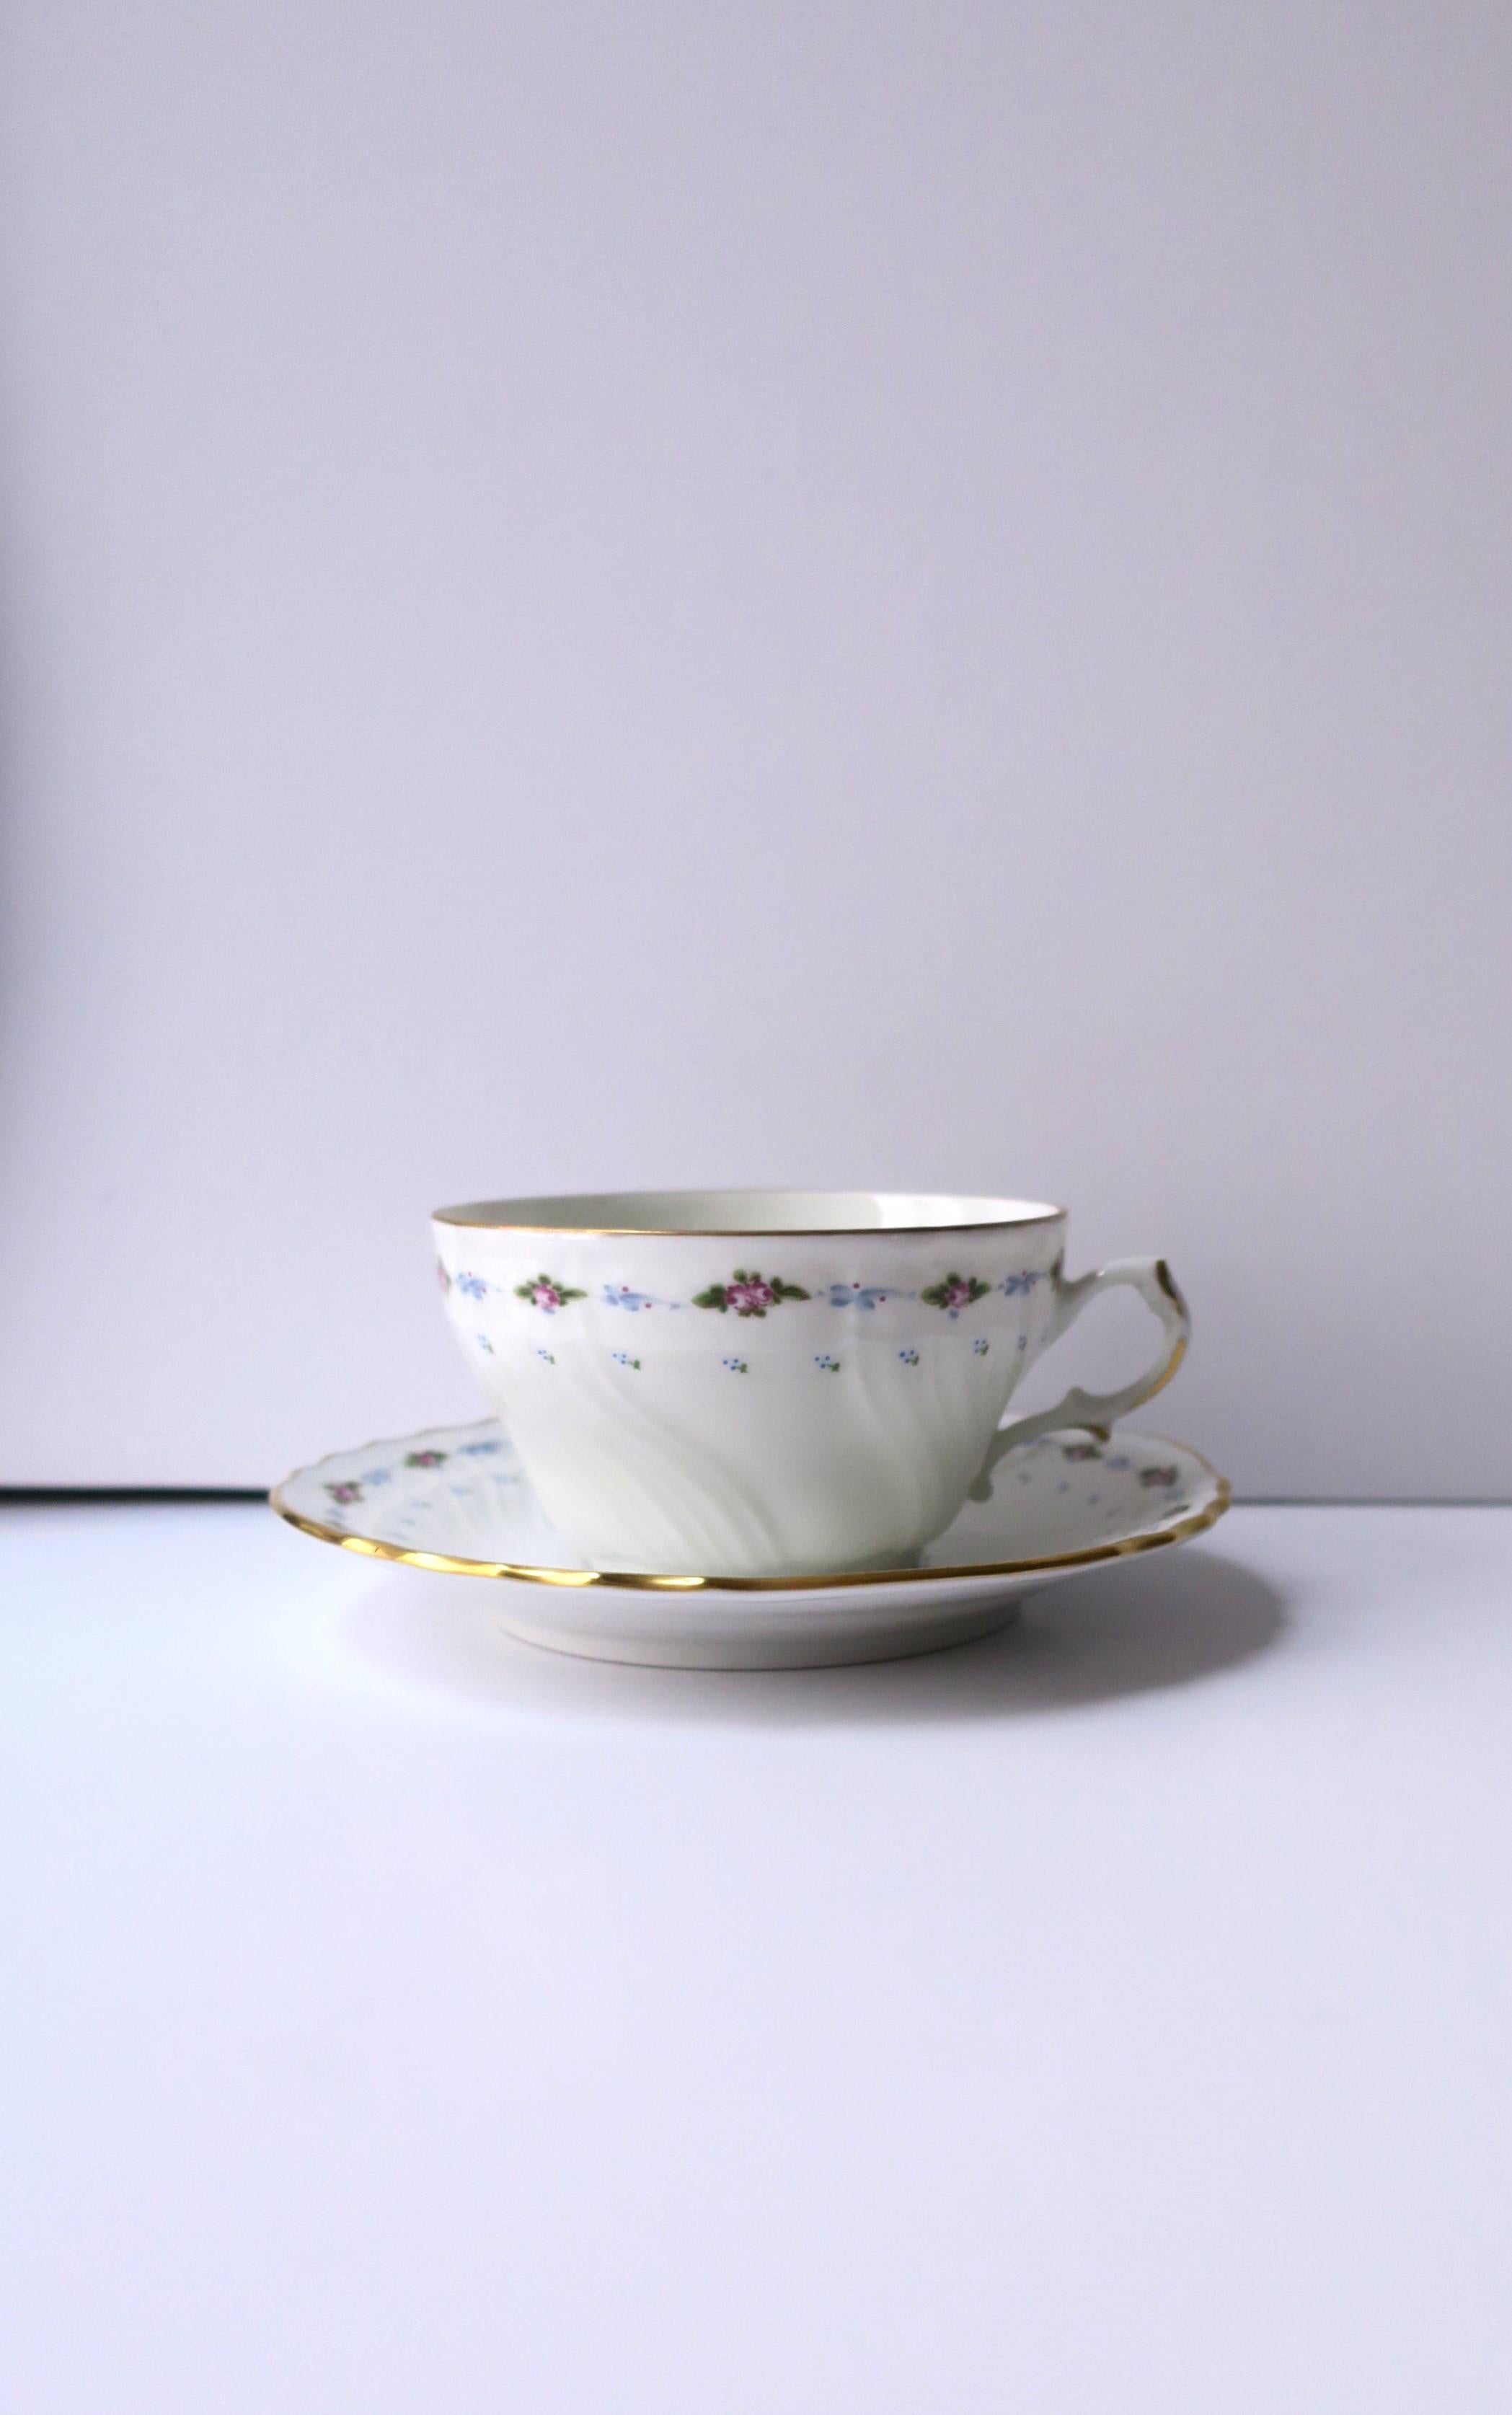 Italienische Kaffee- oder Teetasse mit Untertasse aus weißem Porzellan mit Blumenmuster, Designer Richard Ginori, 1991, Italien. Tasse und Untertasse haben ein blaues, grünes und violettes Muster aus Blumen und Blättern, das mit goldenen Details